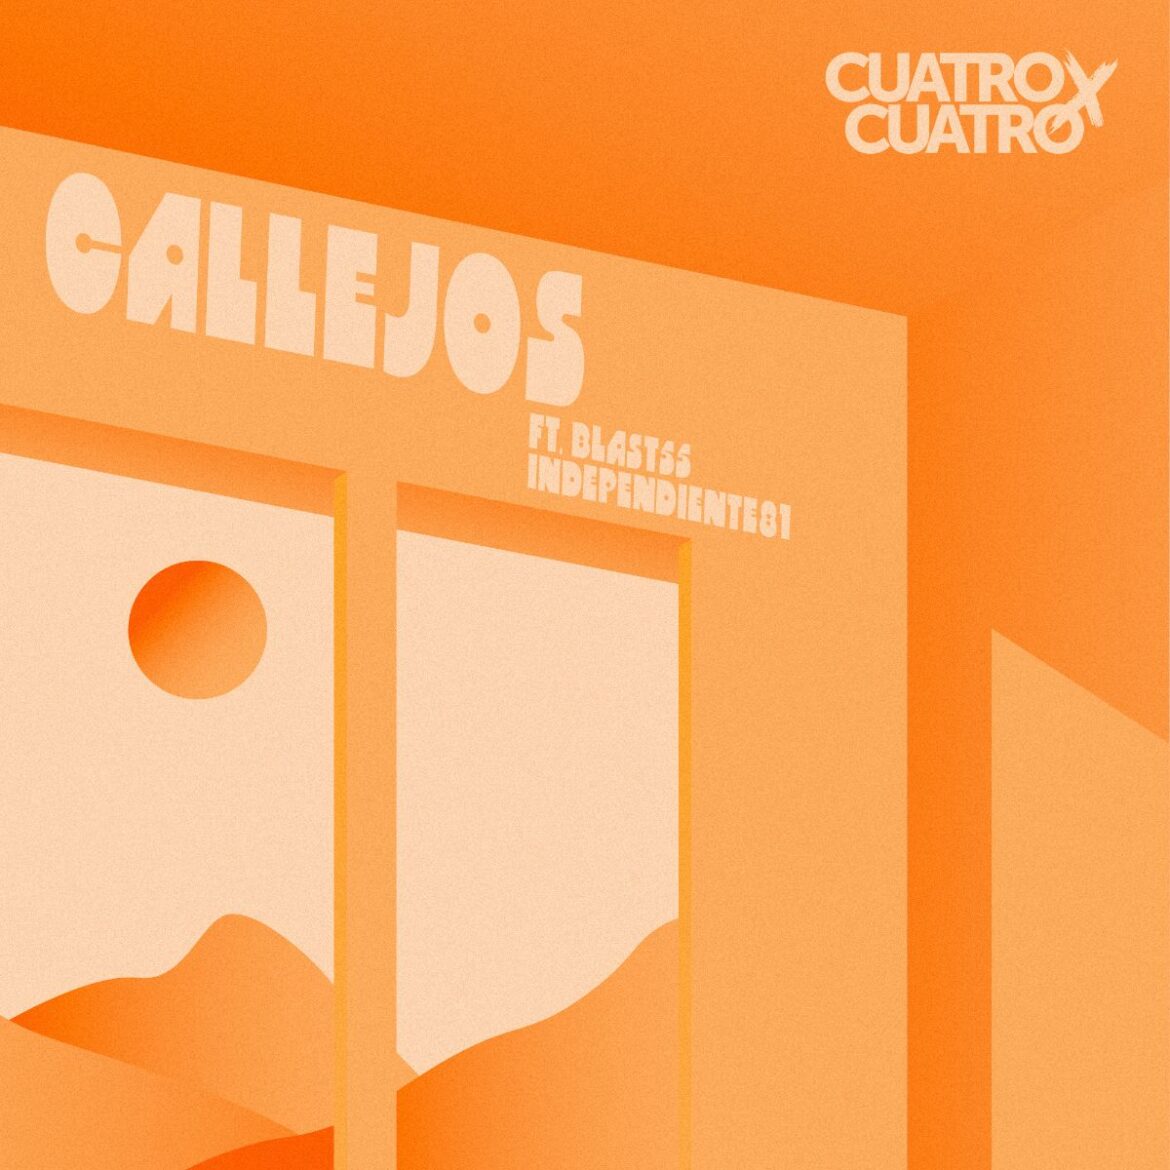 La banda colombiana Cuatro x Cuatro lanza ‘Callejos’ junto a Blast55 e Independiente 81